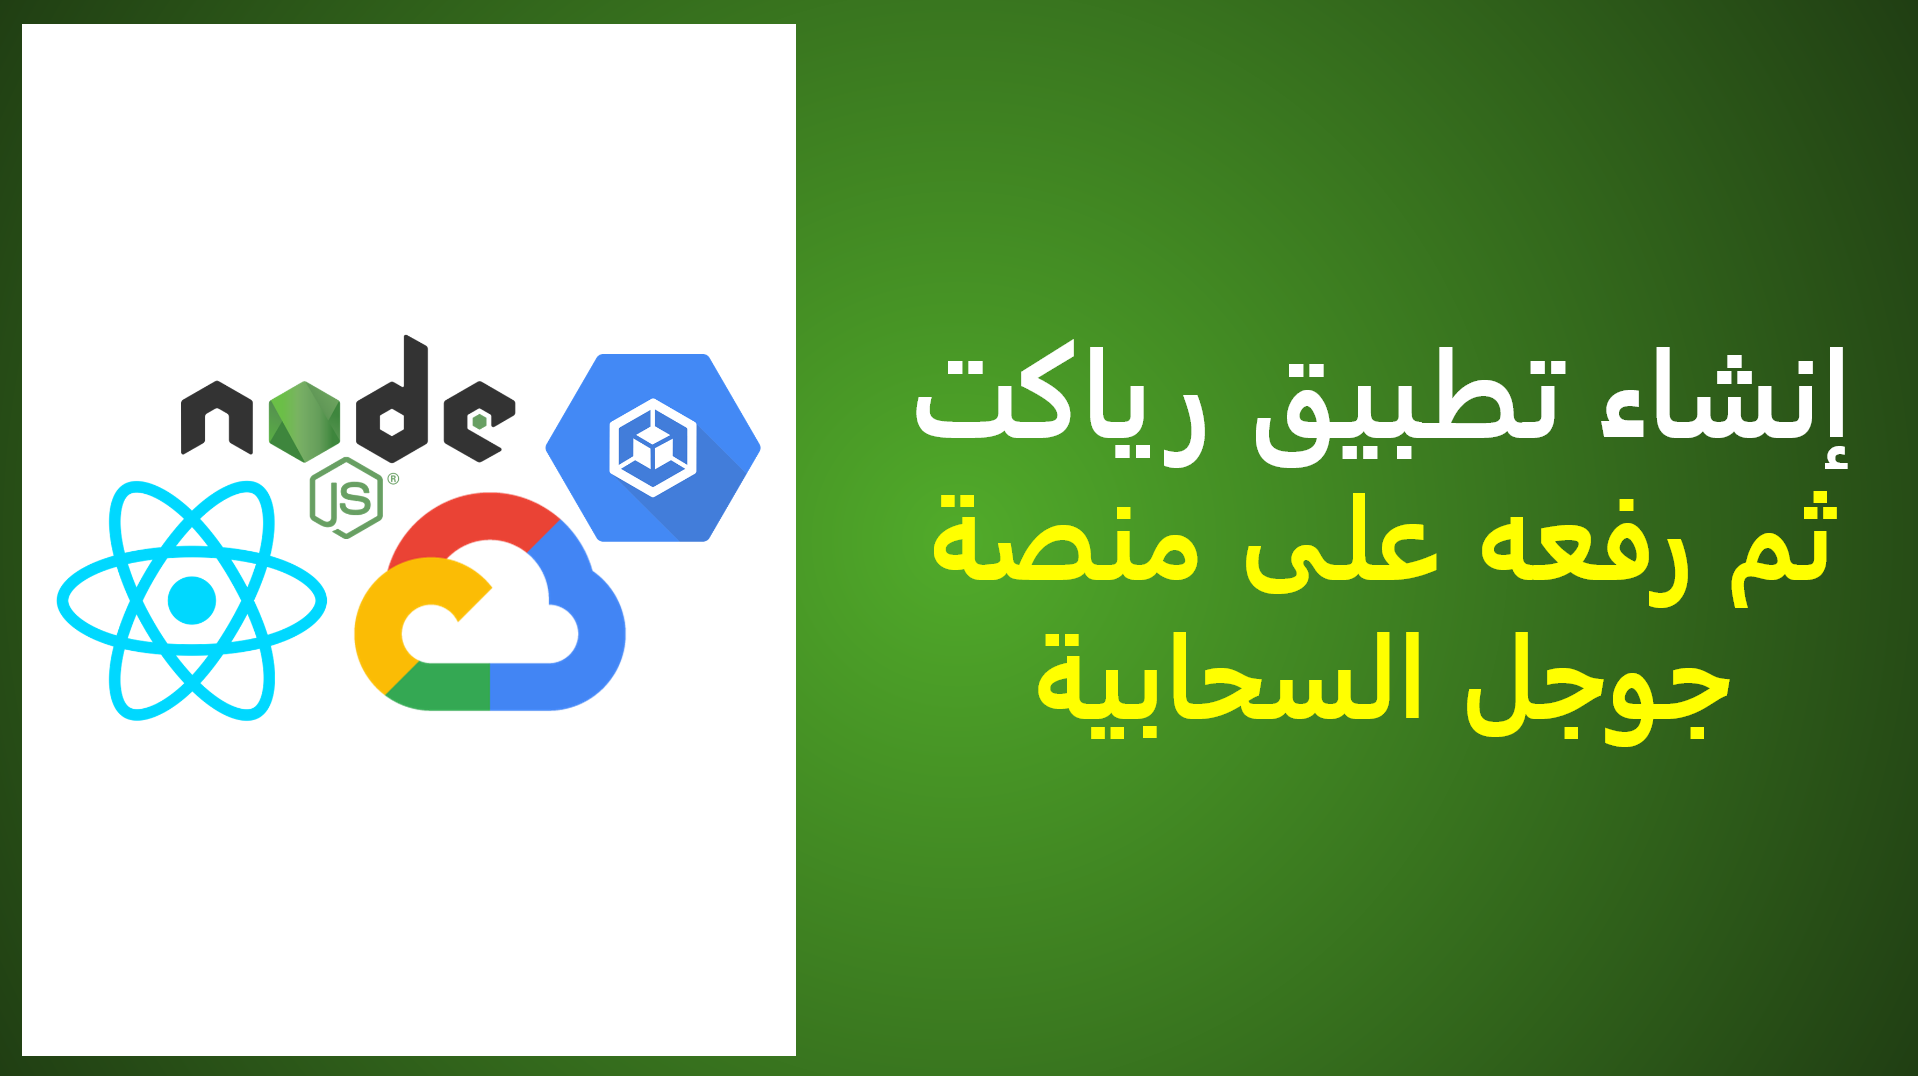 هذه الحلقة الأولى على قناة المنصة العربية من سلسلة #سحابة بعنوان: إنشاء تطبيق رياكت ثم رفعه على منصة جوجل السحابية